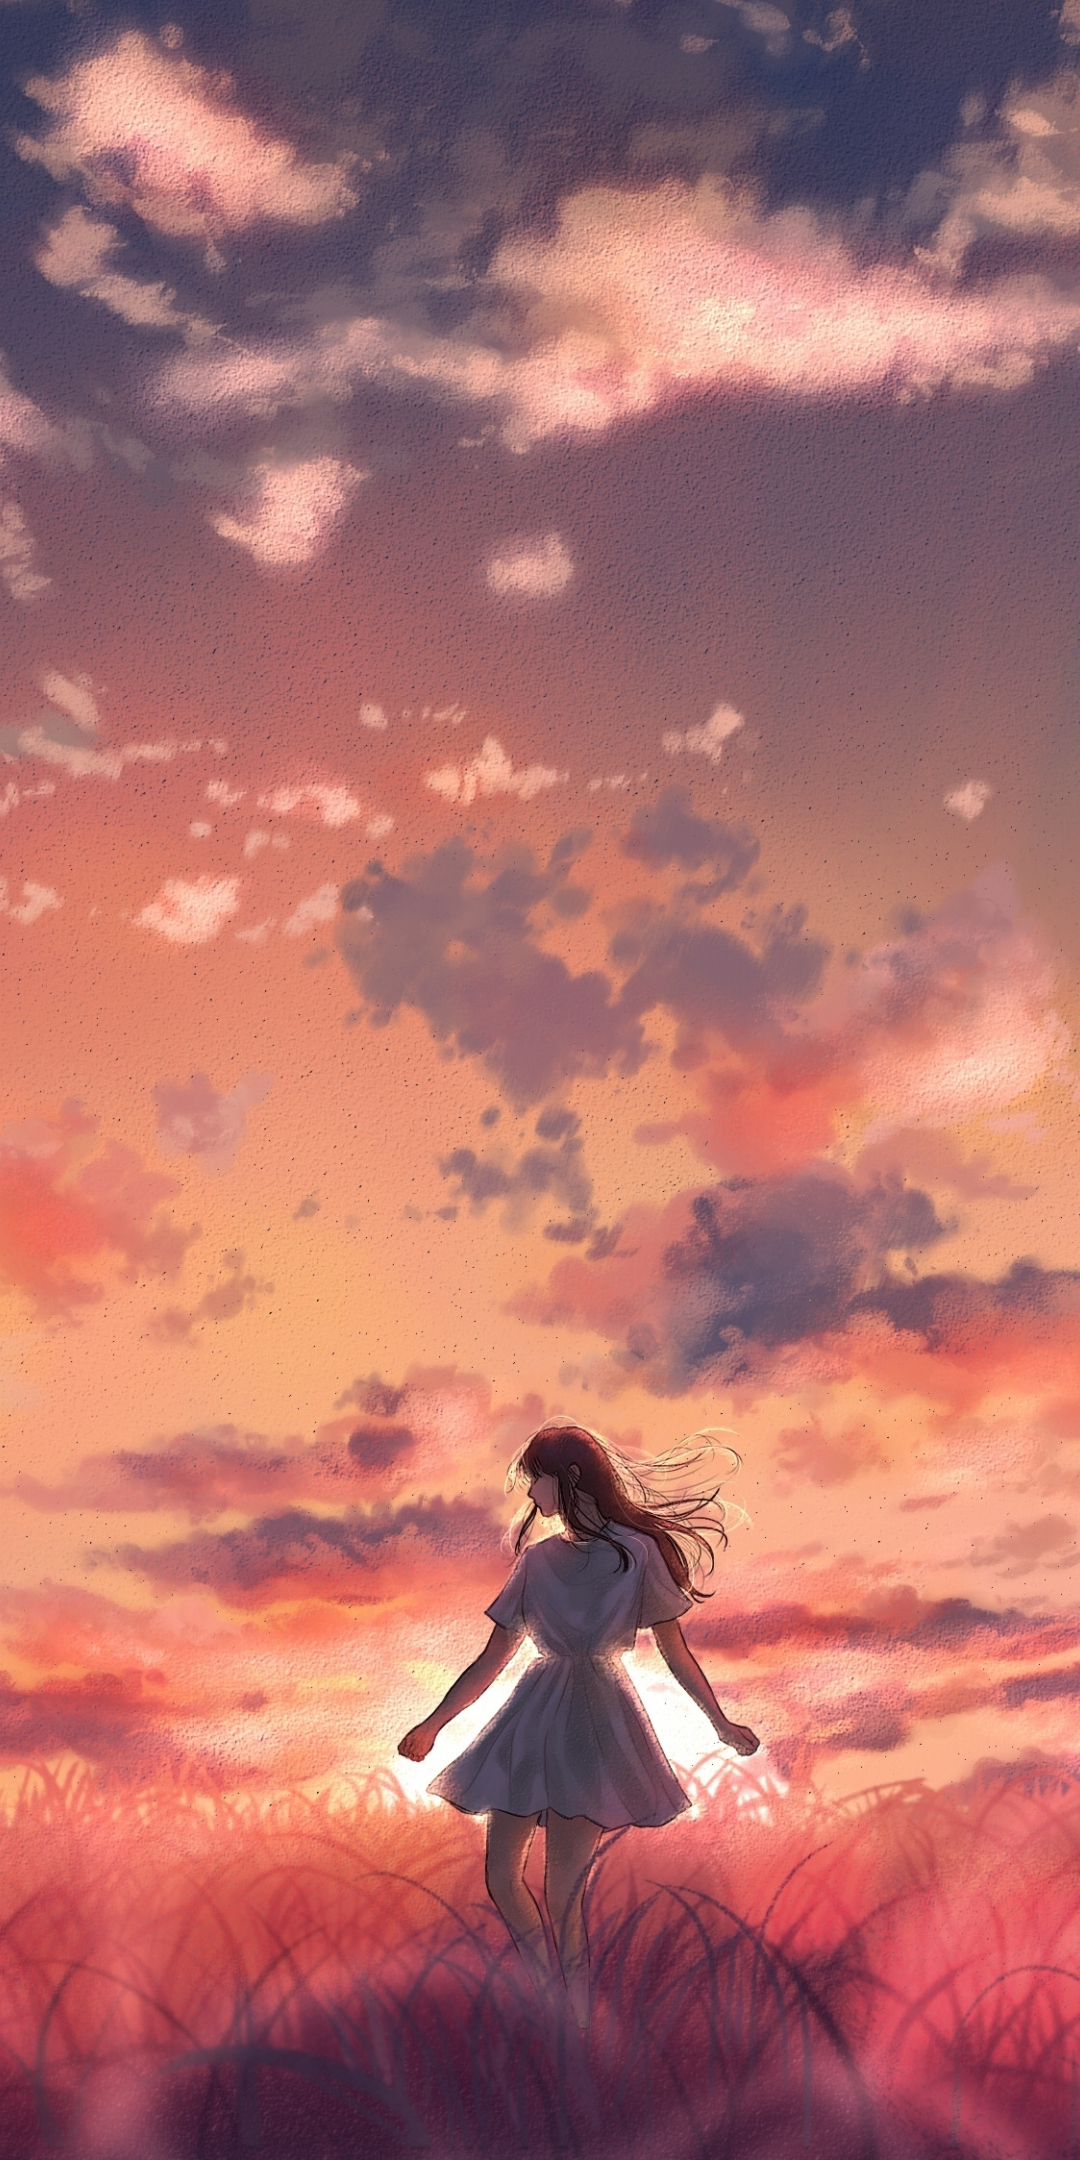 Outdoor, sunset, girl's dance, original, 1080x2160 wallpaper